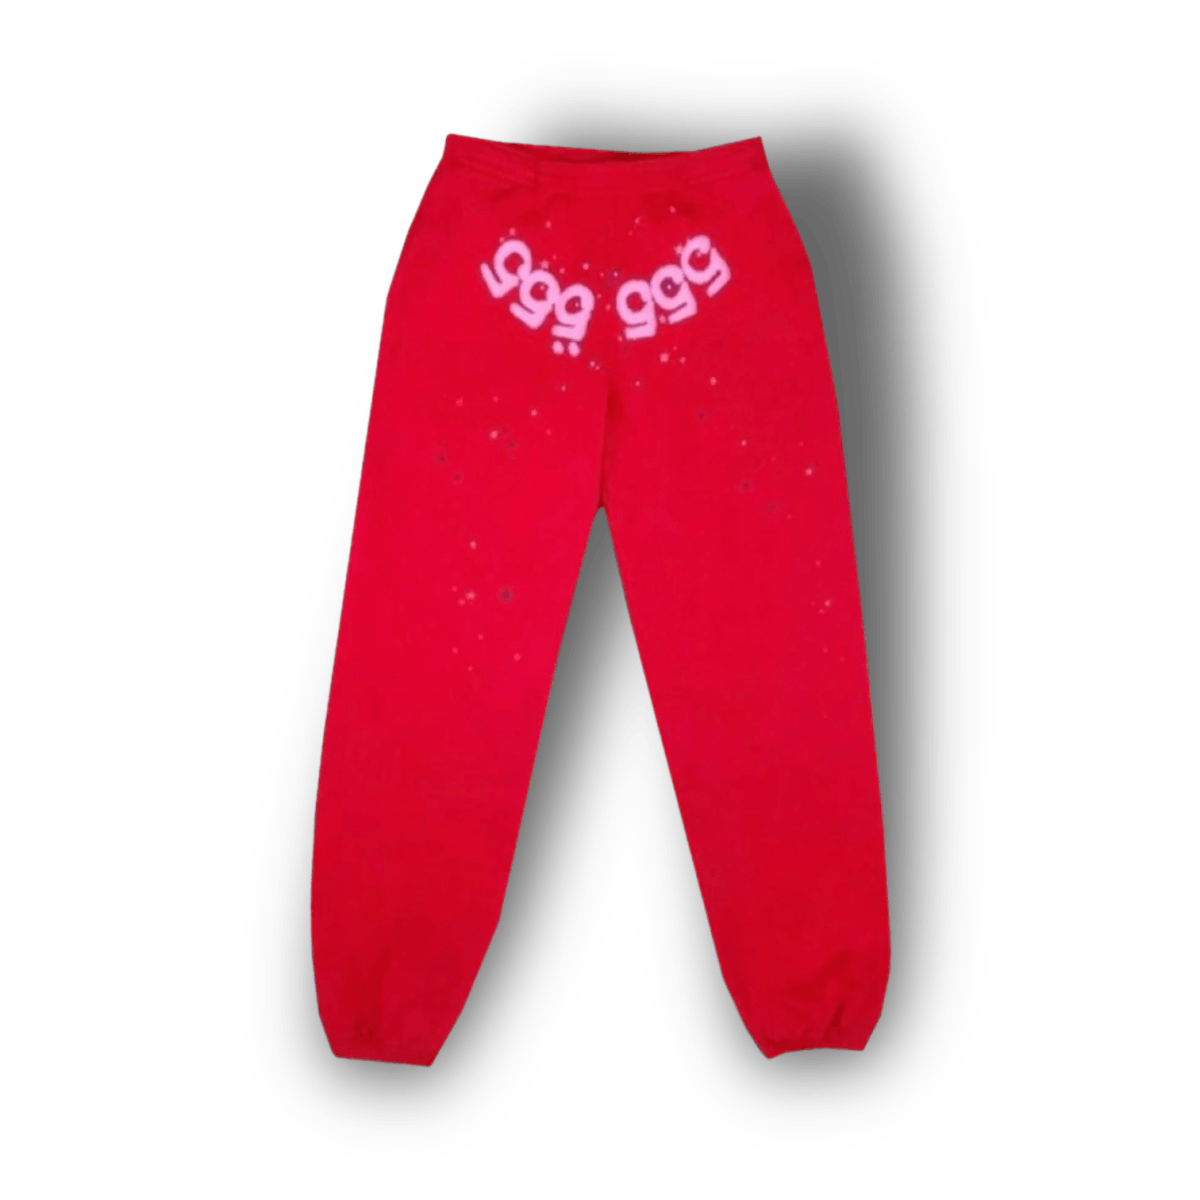 Sp5der Worldwide Red Angel Number 555 Sweatpants Red - Hoodie - Jawns on Fire Sneakers & Streetwear